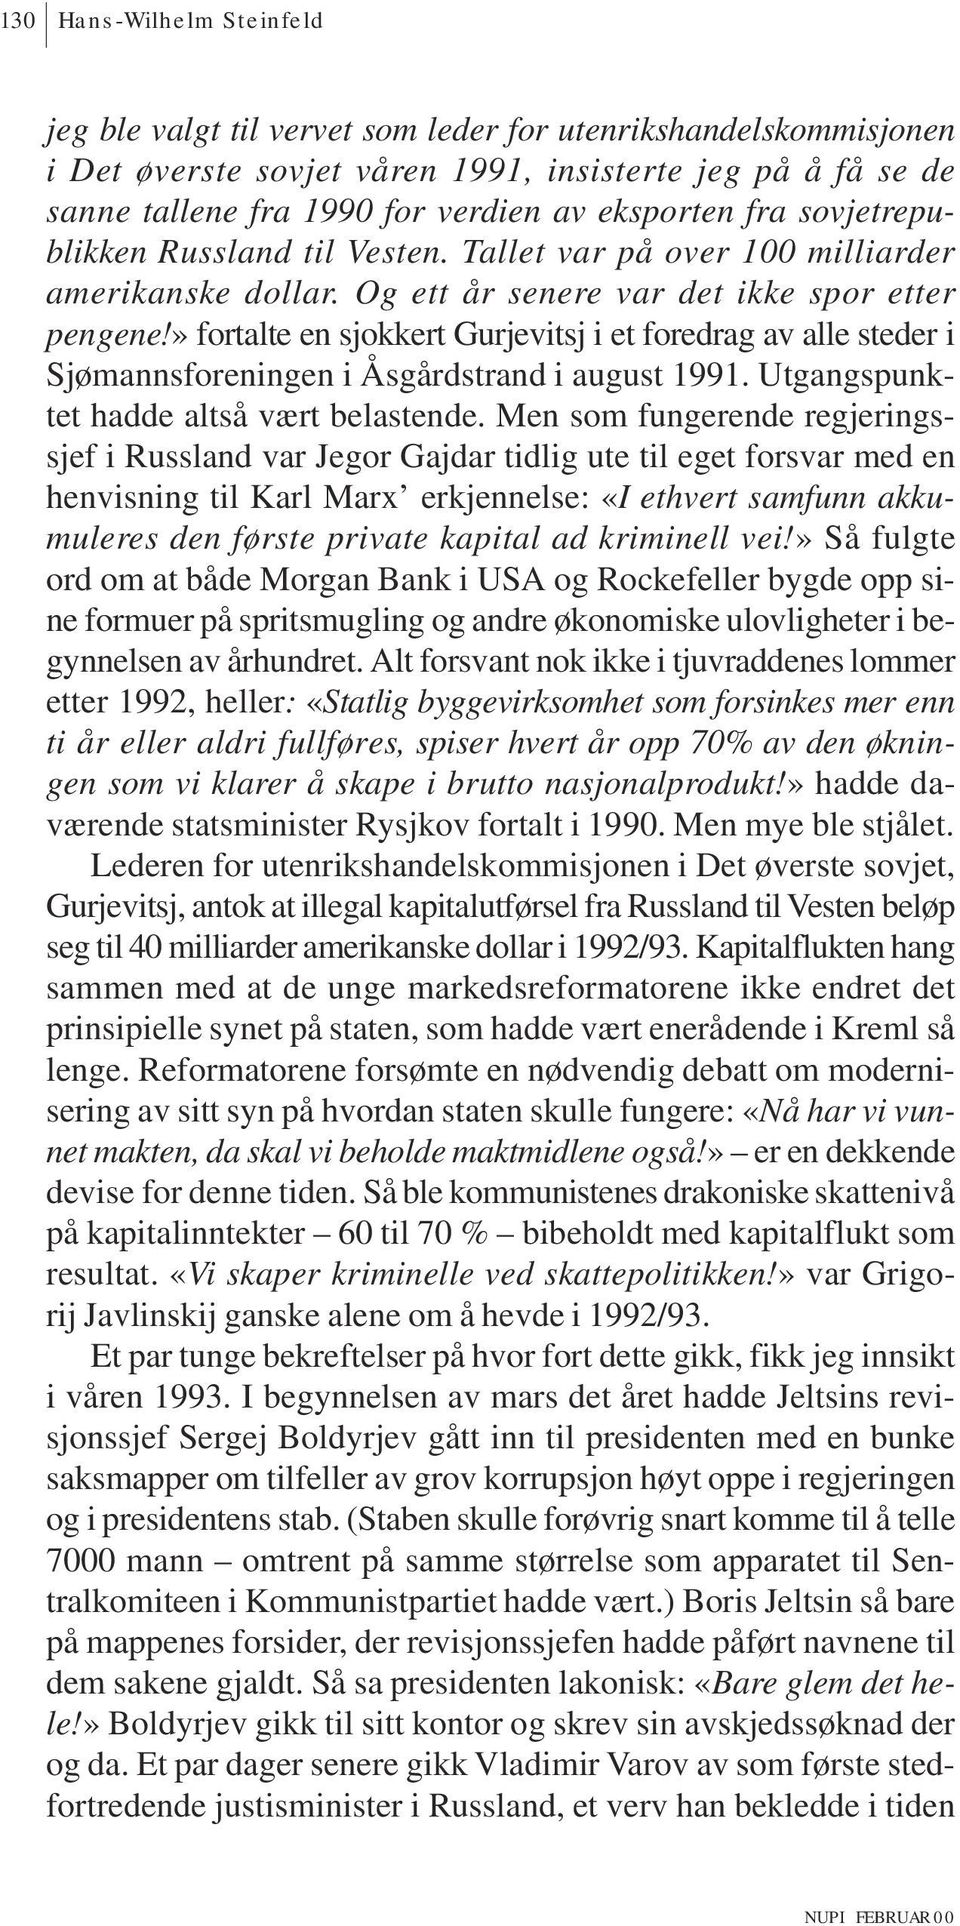 » fortalte en sjokkert Gurjevitsj i et foredrag av alle steder i Sjømannsforeningen i Åsgårdstrand i august 1991. Utgangspunktet hadde altså vært belastende.